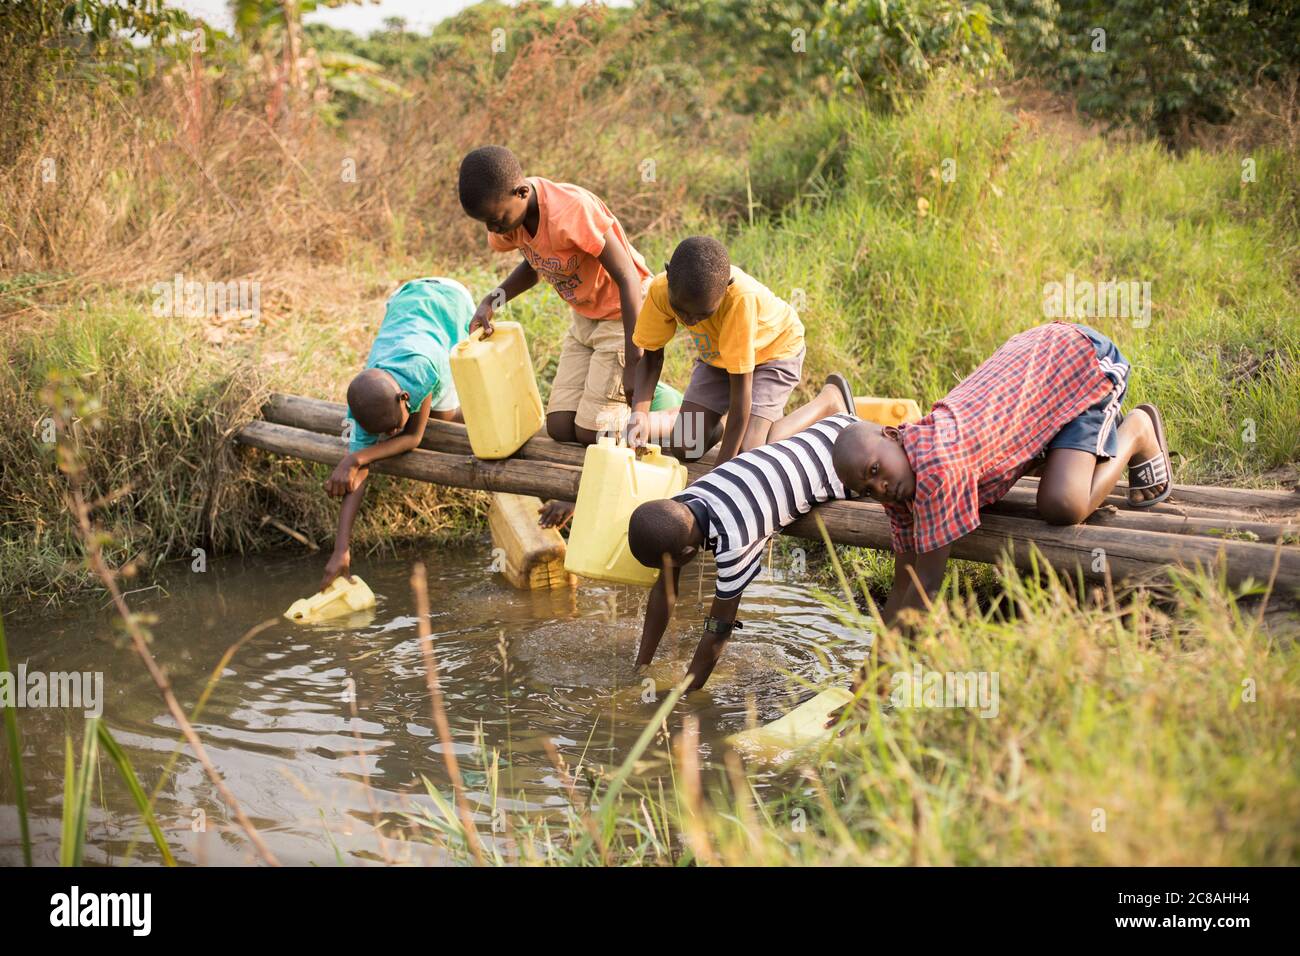 Los niños africanos jóvenes recogen agua en un pequeño arroyo en el distrito de Rakai, Uganda, África Oriental. Foto de stock